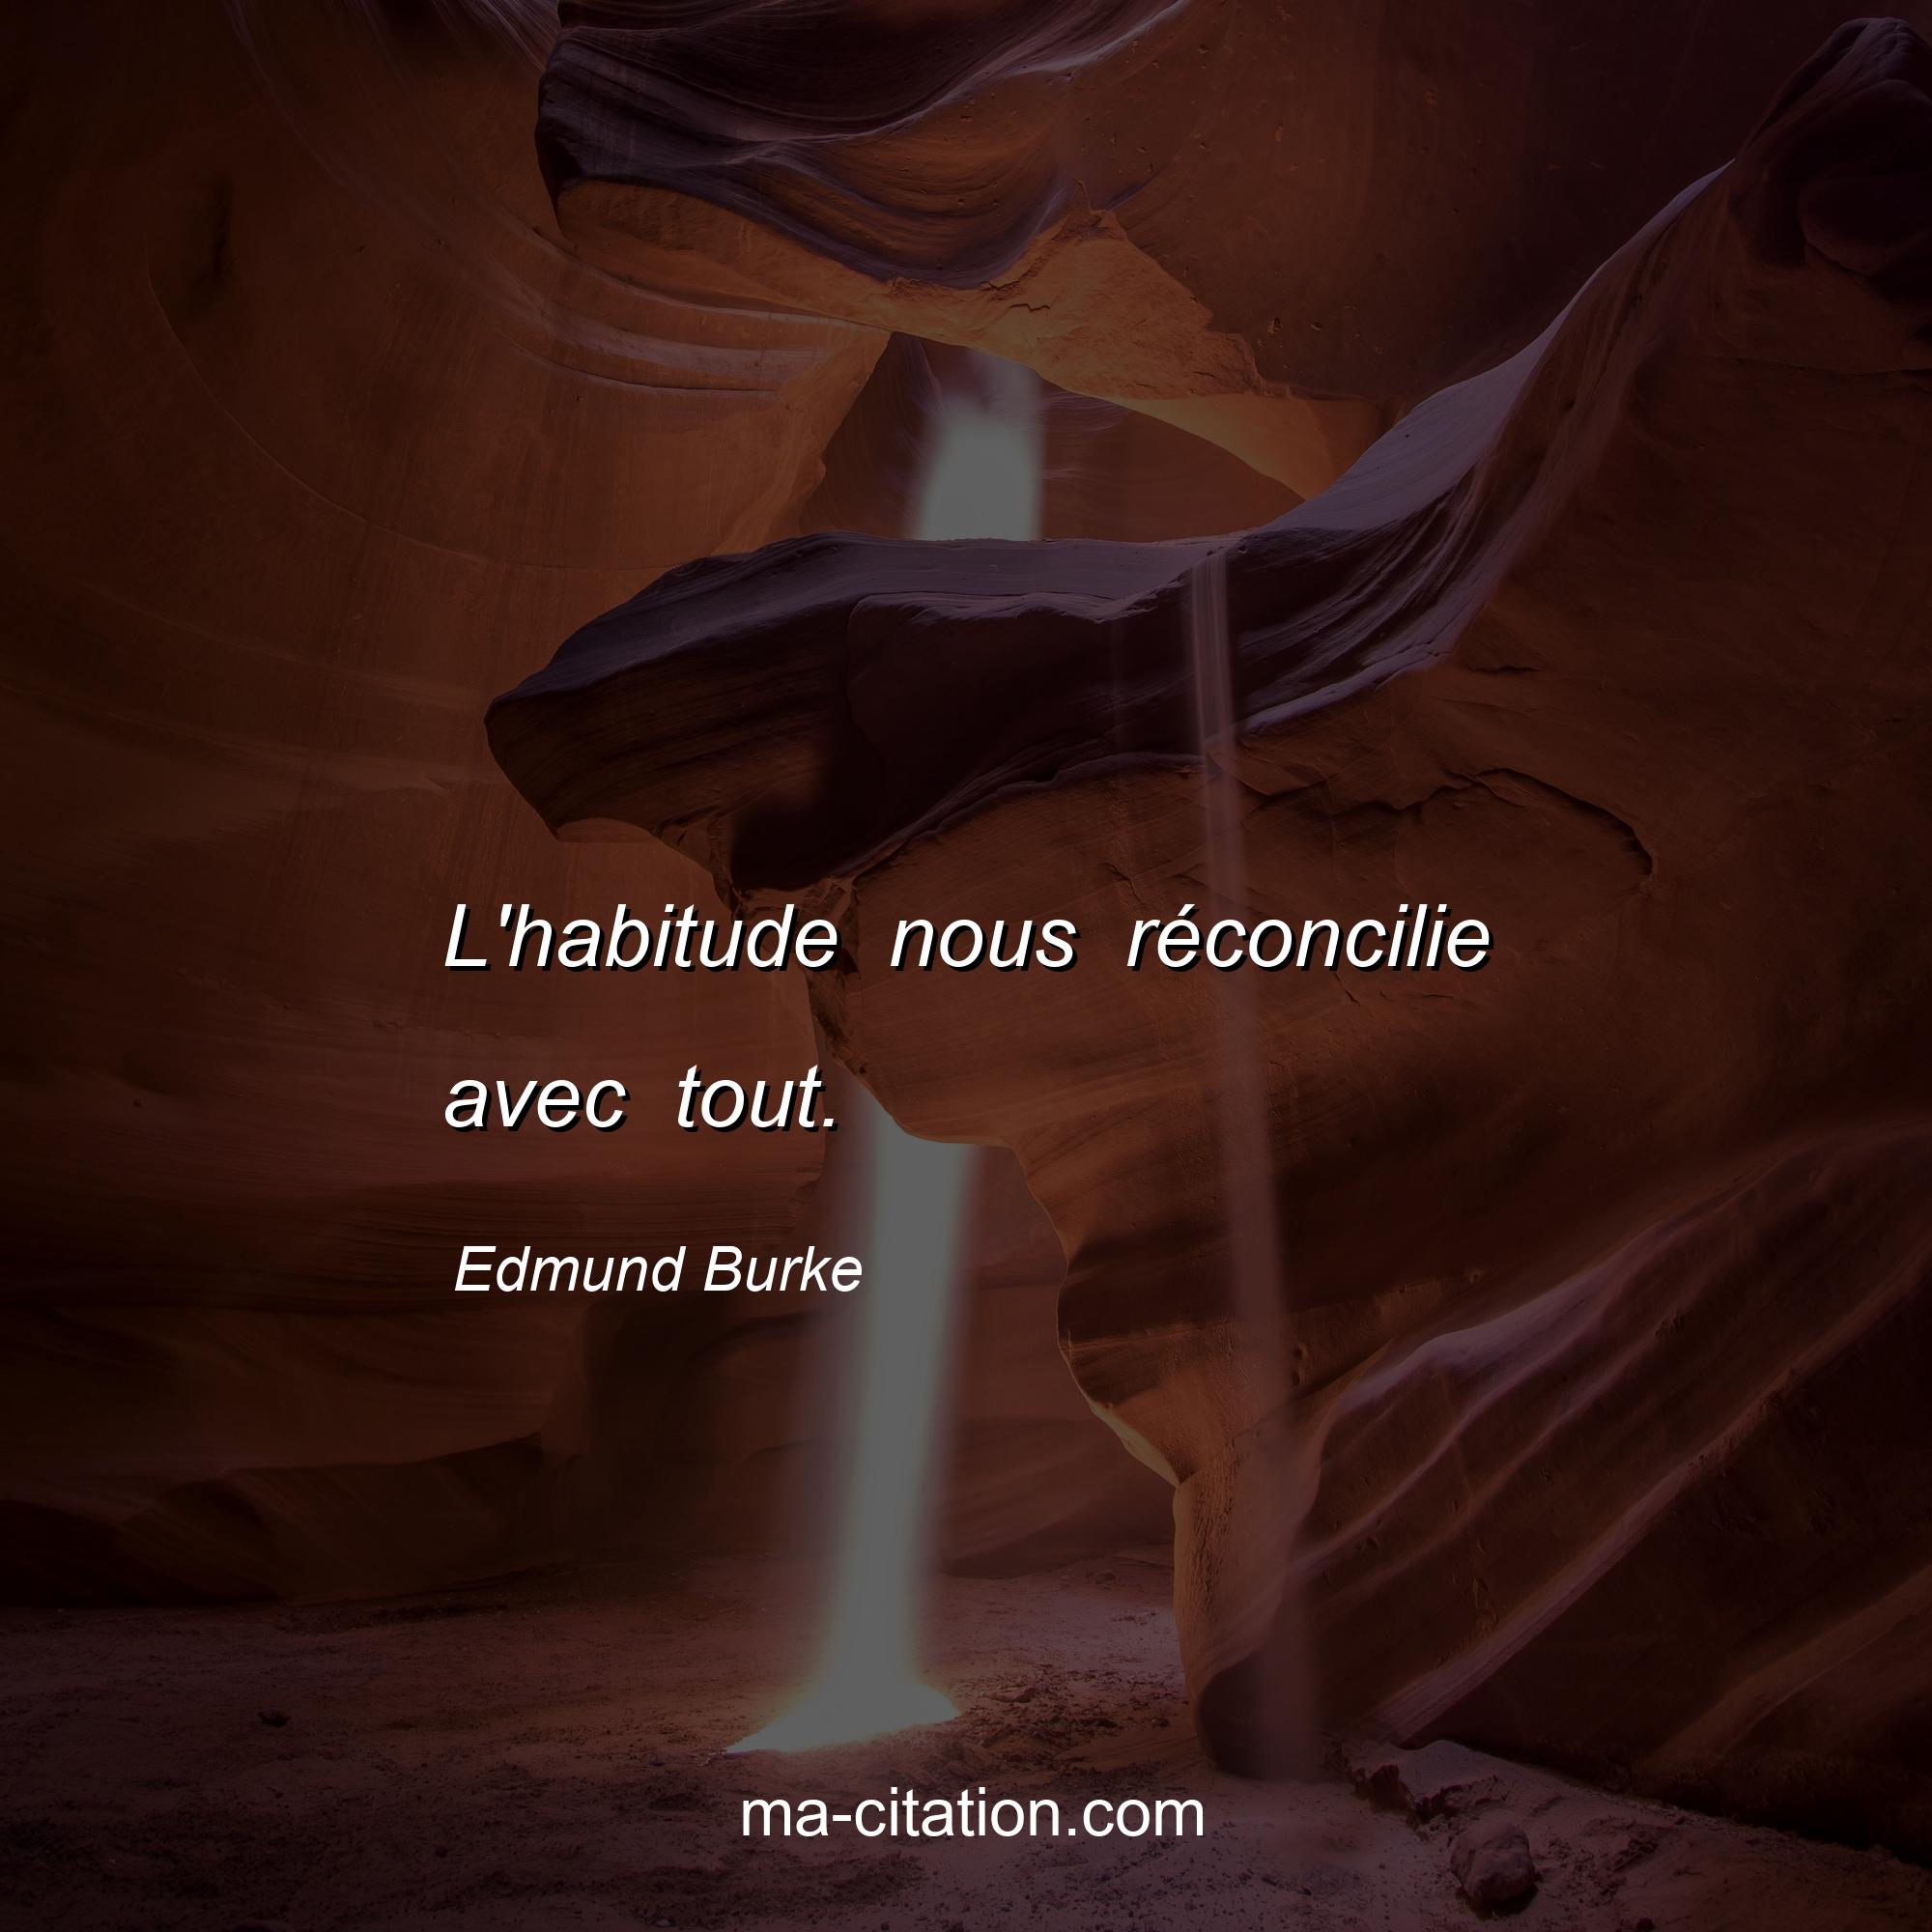 Edmund Burke : L'habitude nous réconcilie avec tout.